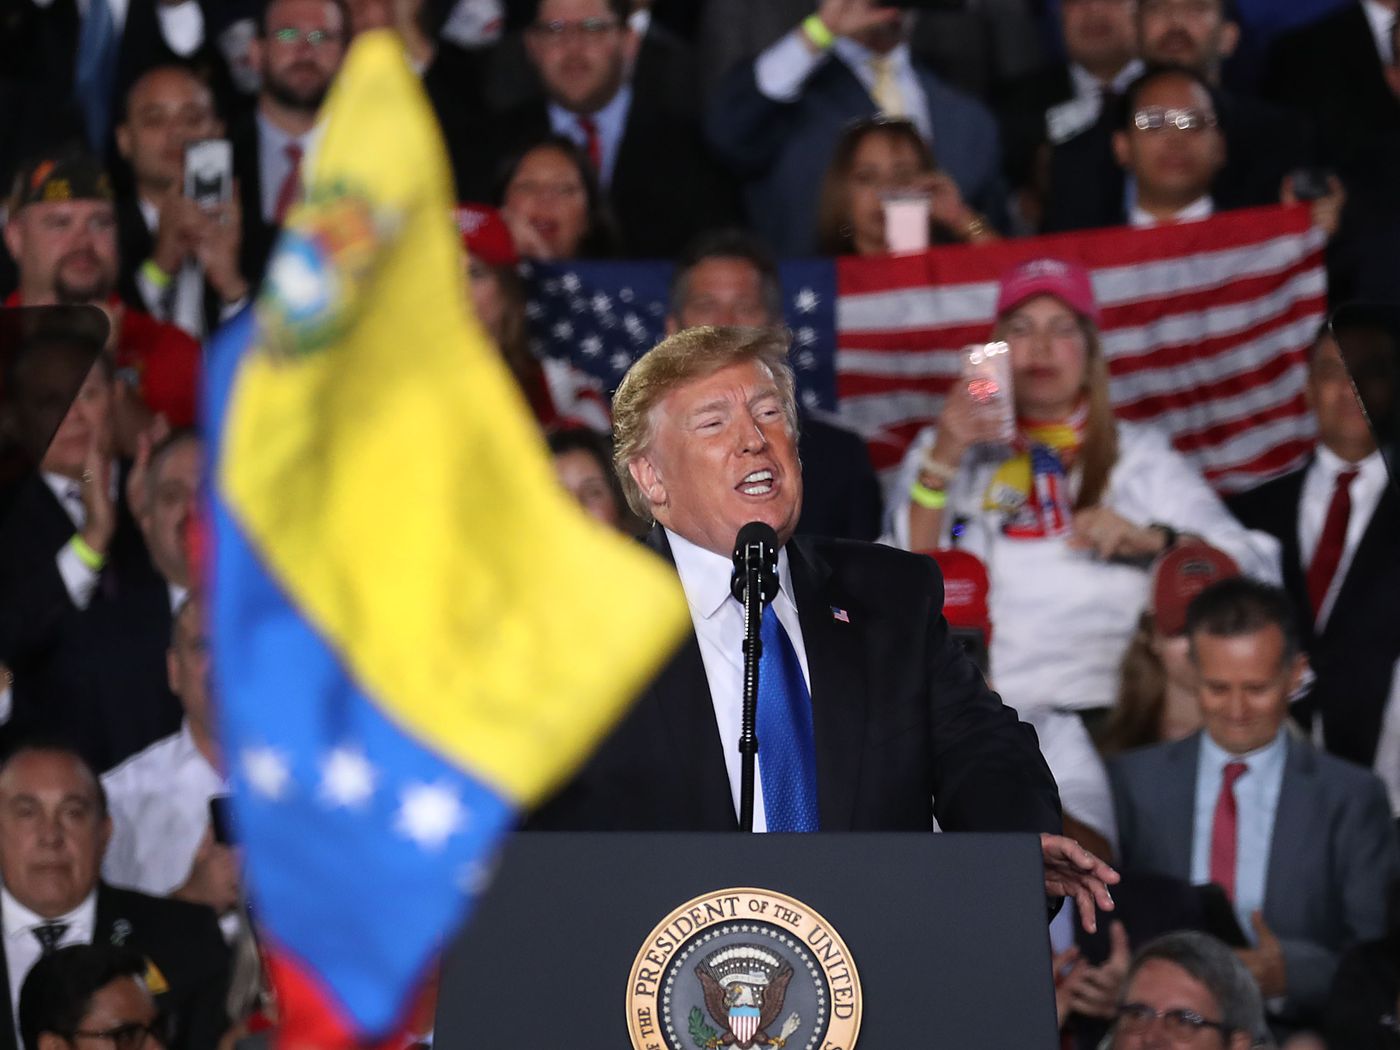 Trump'ın 2020 mitinglerinden Venezuela bayrağının göründüğü bir kare. Trump, Venezuela'da rejim değişikliği taraftarı bir grubu yoğun şekilde desteklemişti. Vox, 2020.